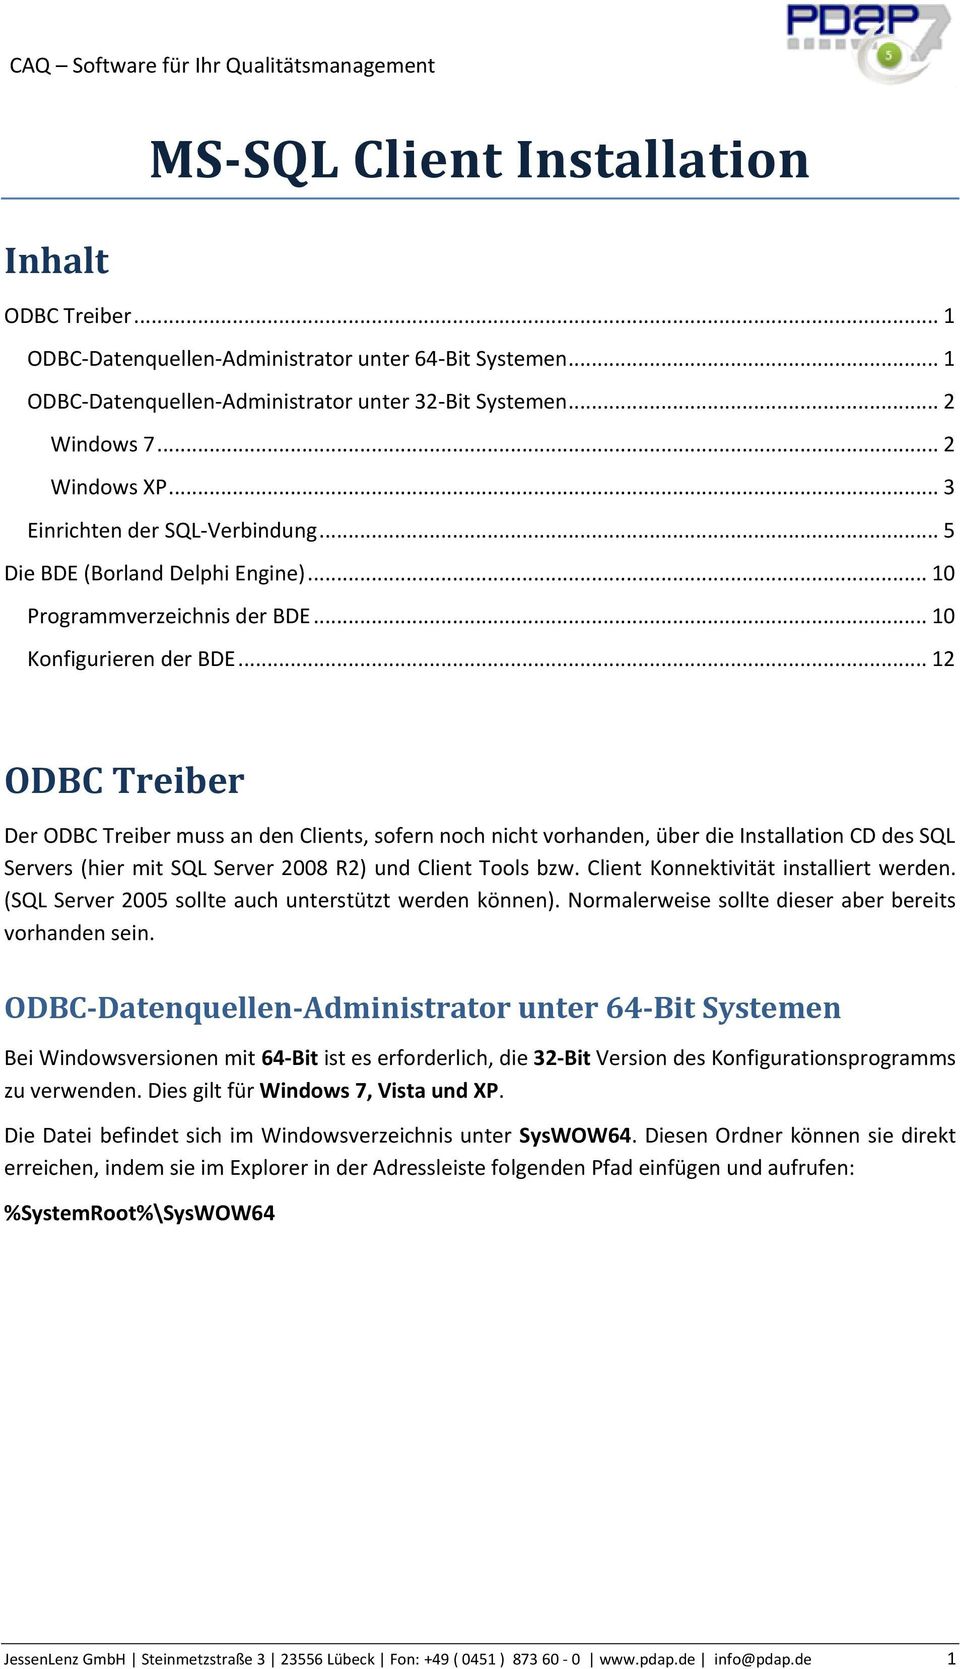 .. 12 ODBC Treiber Der ODBC Treiber muss an den Clients, sofern noch nicht vorhanden, über die Installation CD des SQL Servers (hier mit SQL Server 2008 R2) und Client Tools bzw.